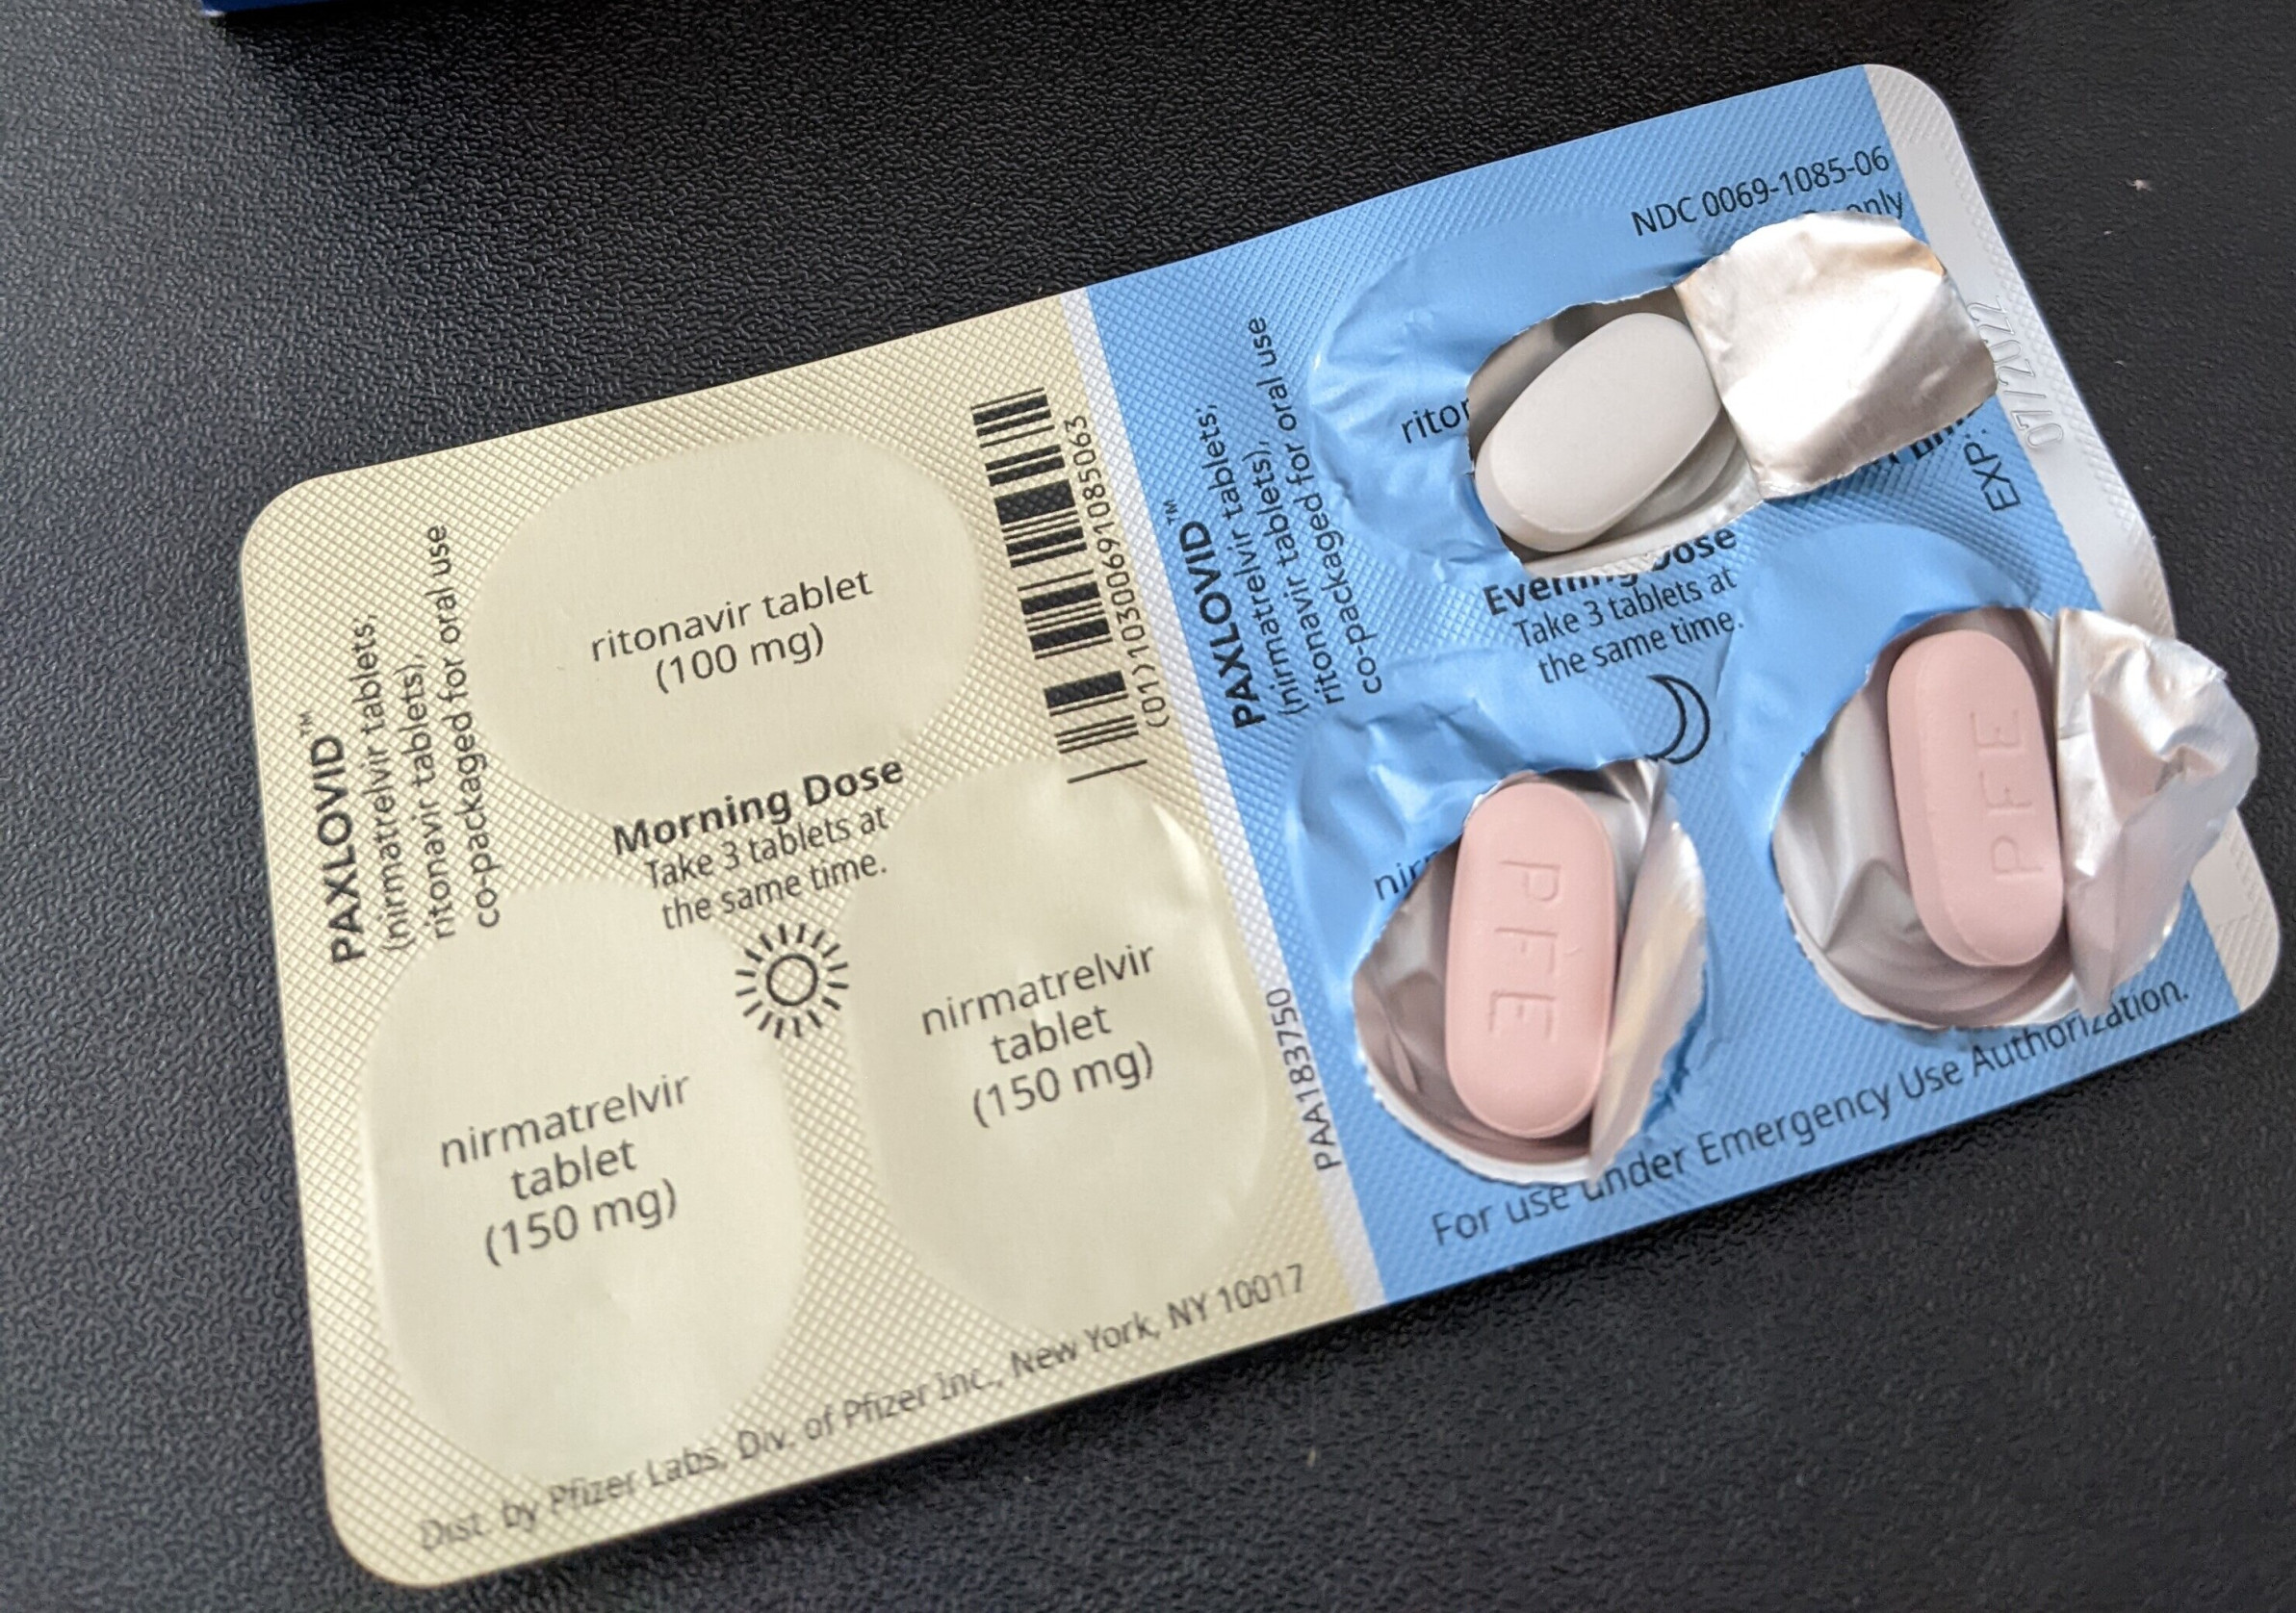 Pilulky proti těžkému covidu leží ve skladu už skoro měsíc. Kvůli podmínkám výrobce je pacienti stále nemají